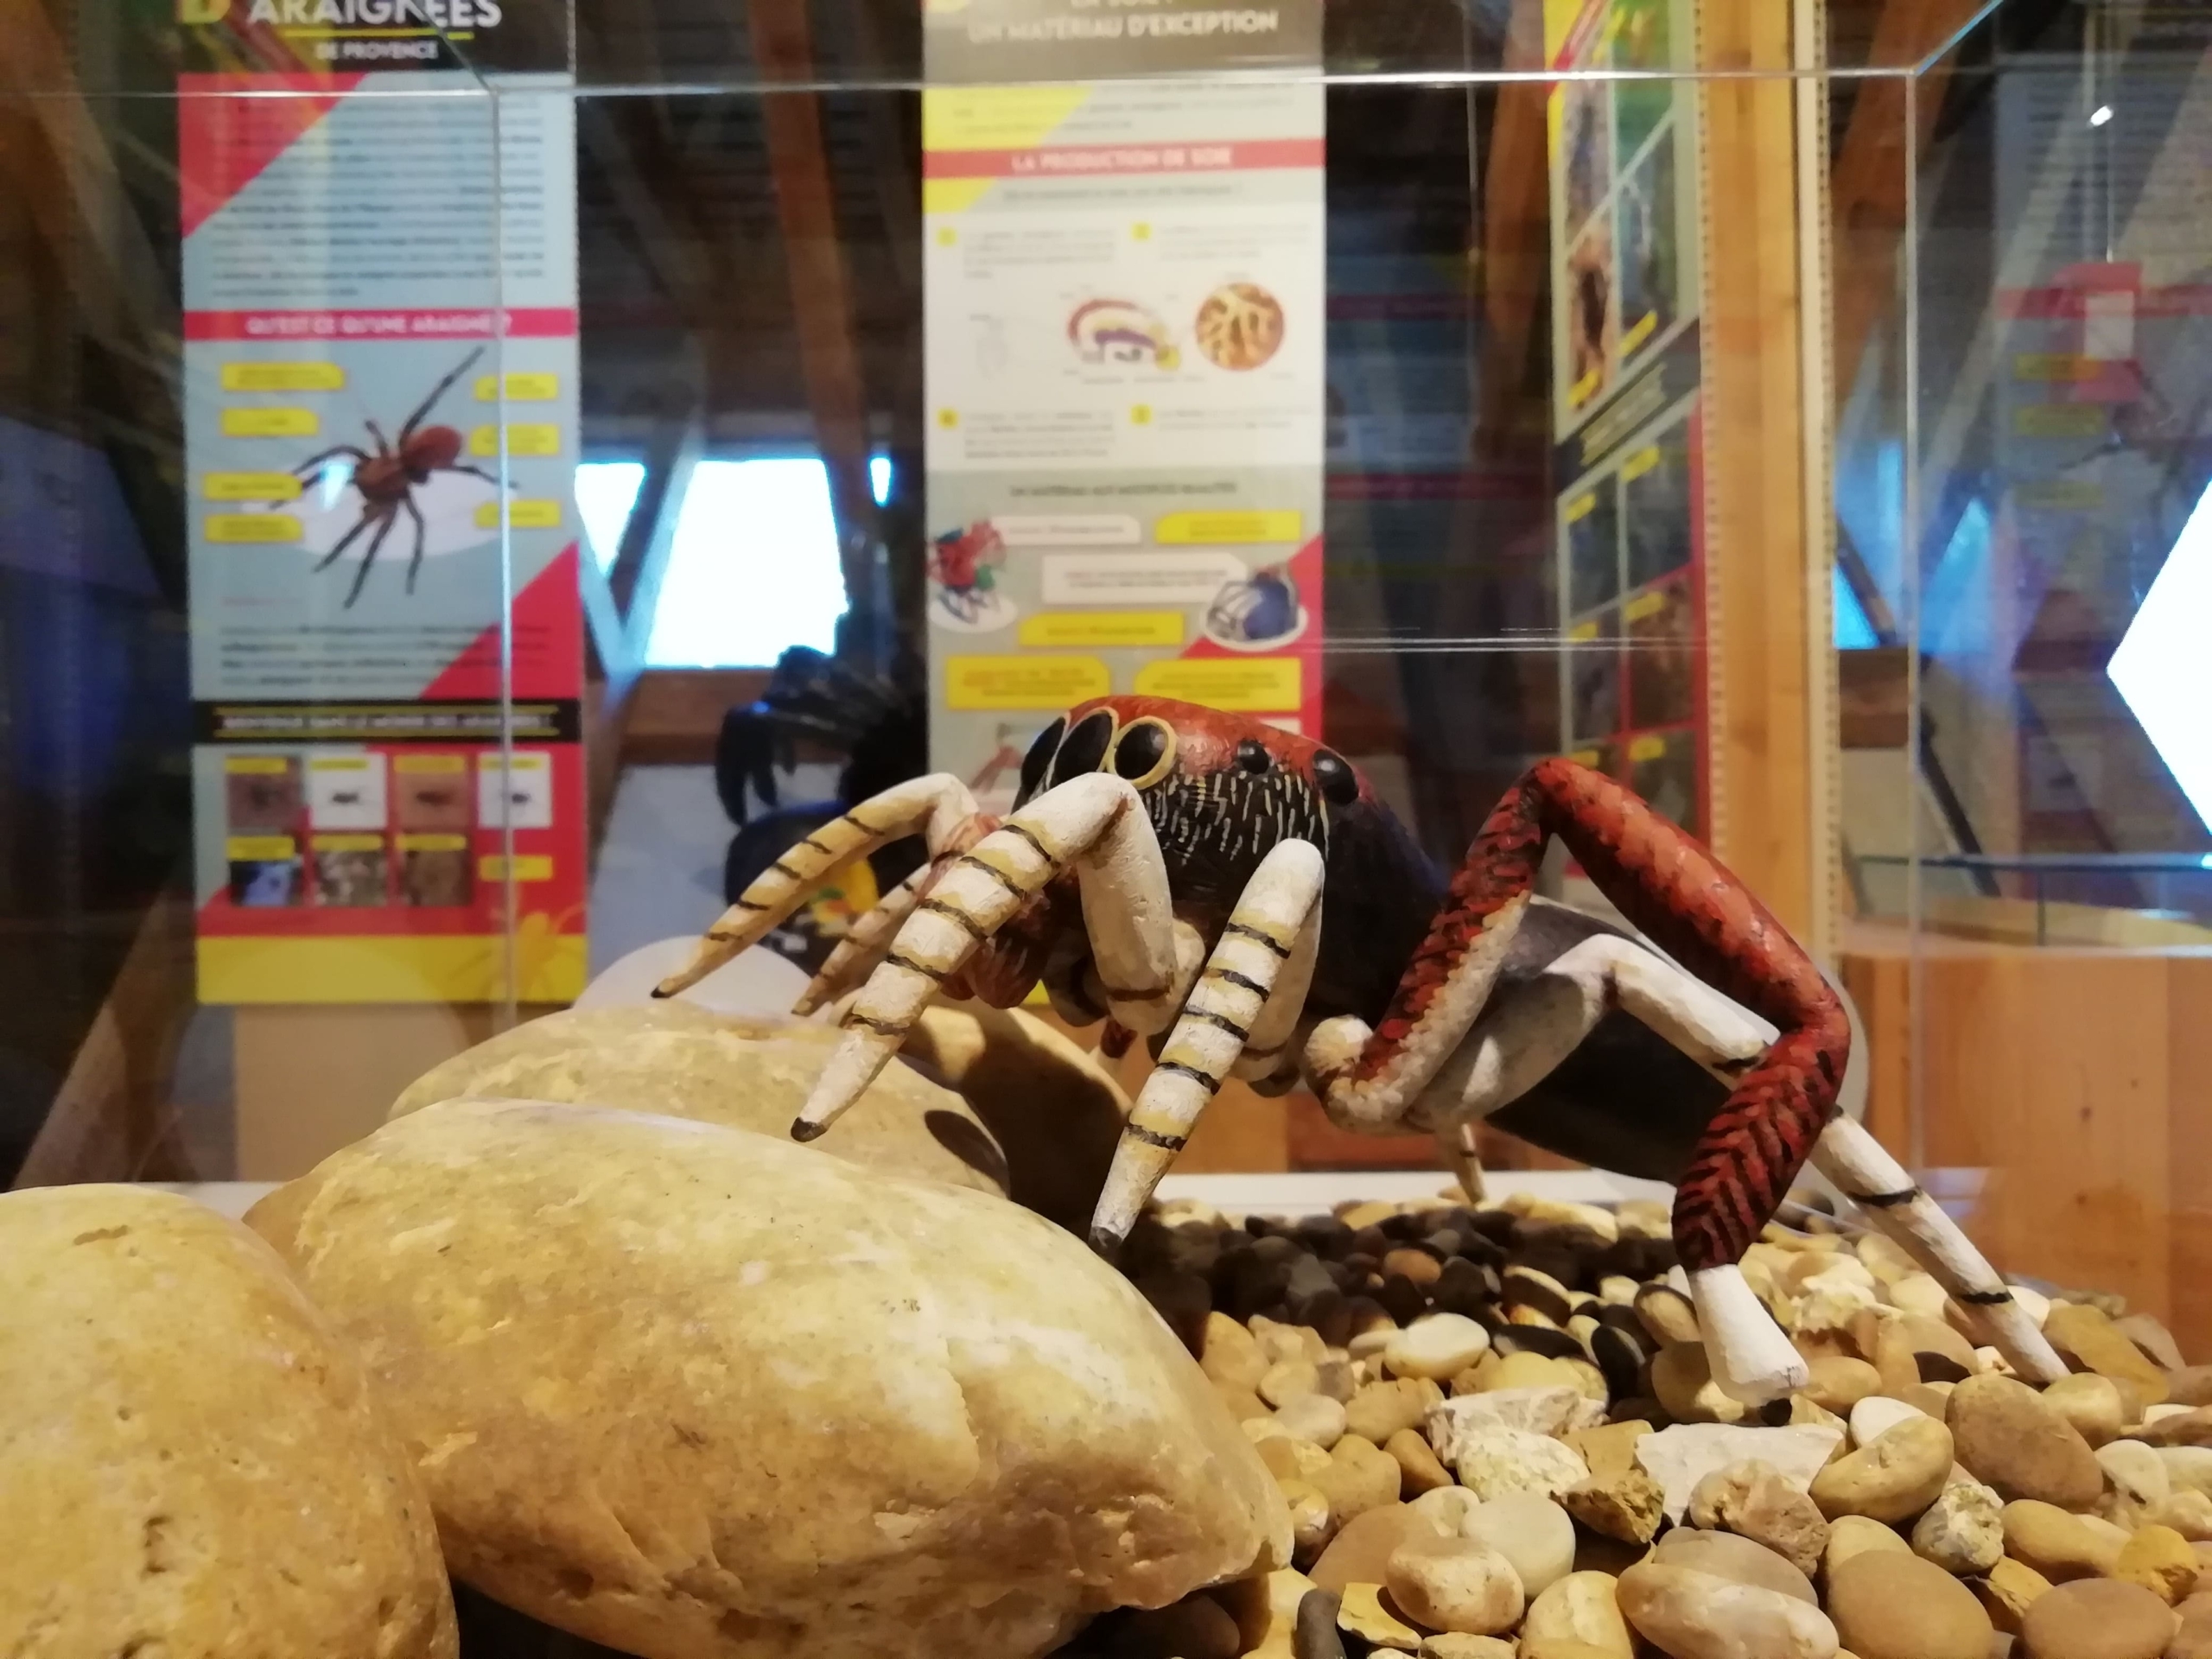 maquette d'une araignée dans une vitrine de l'exposition sur les araignées de provence au Naturoptère